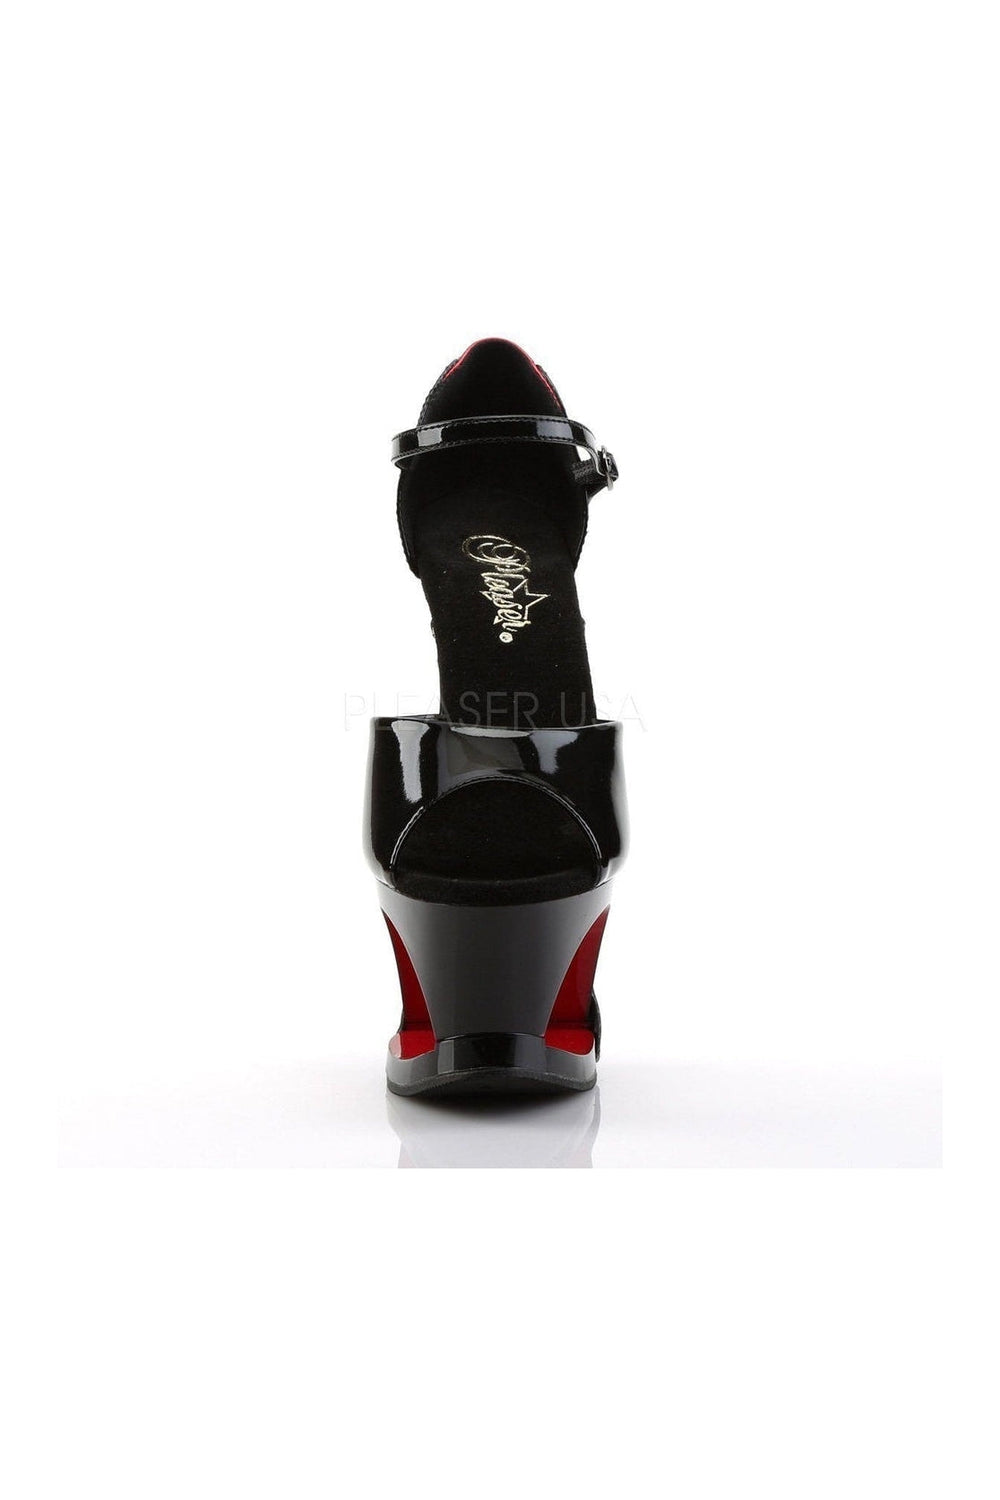 MOON-760FH Platform Sandal | Black Patent-Pleaser-Sandals-SEXYSHOES.COM